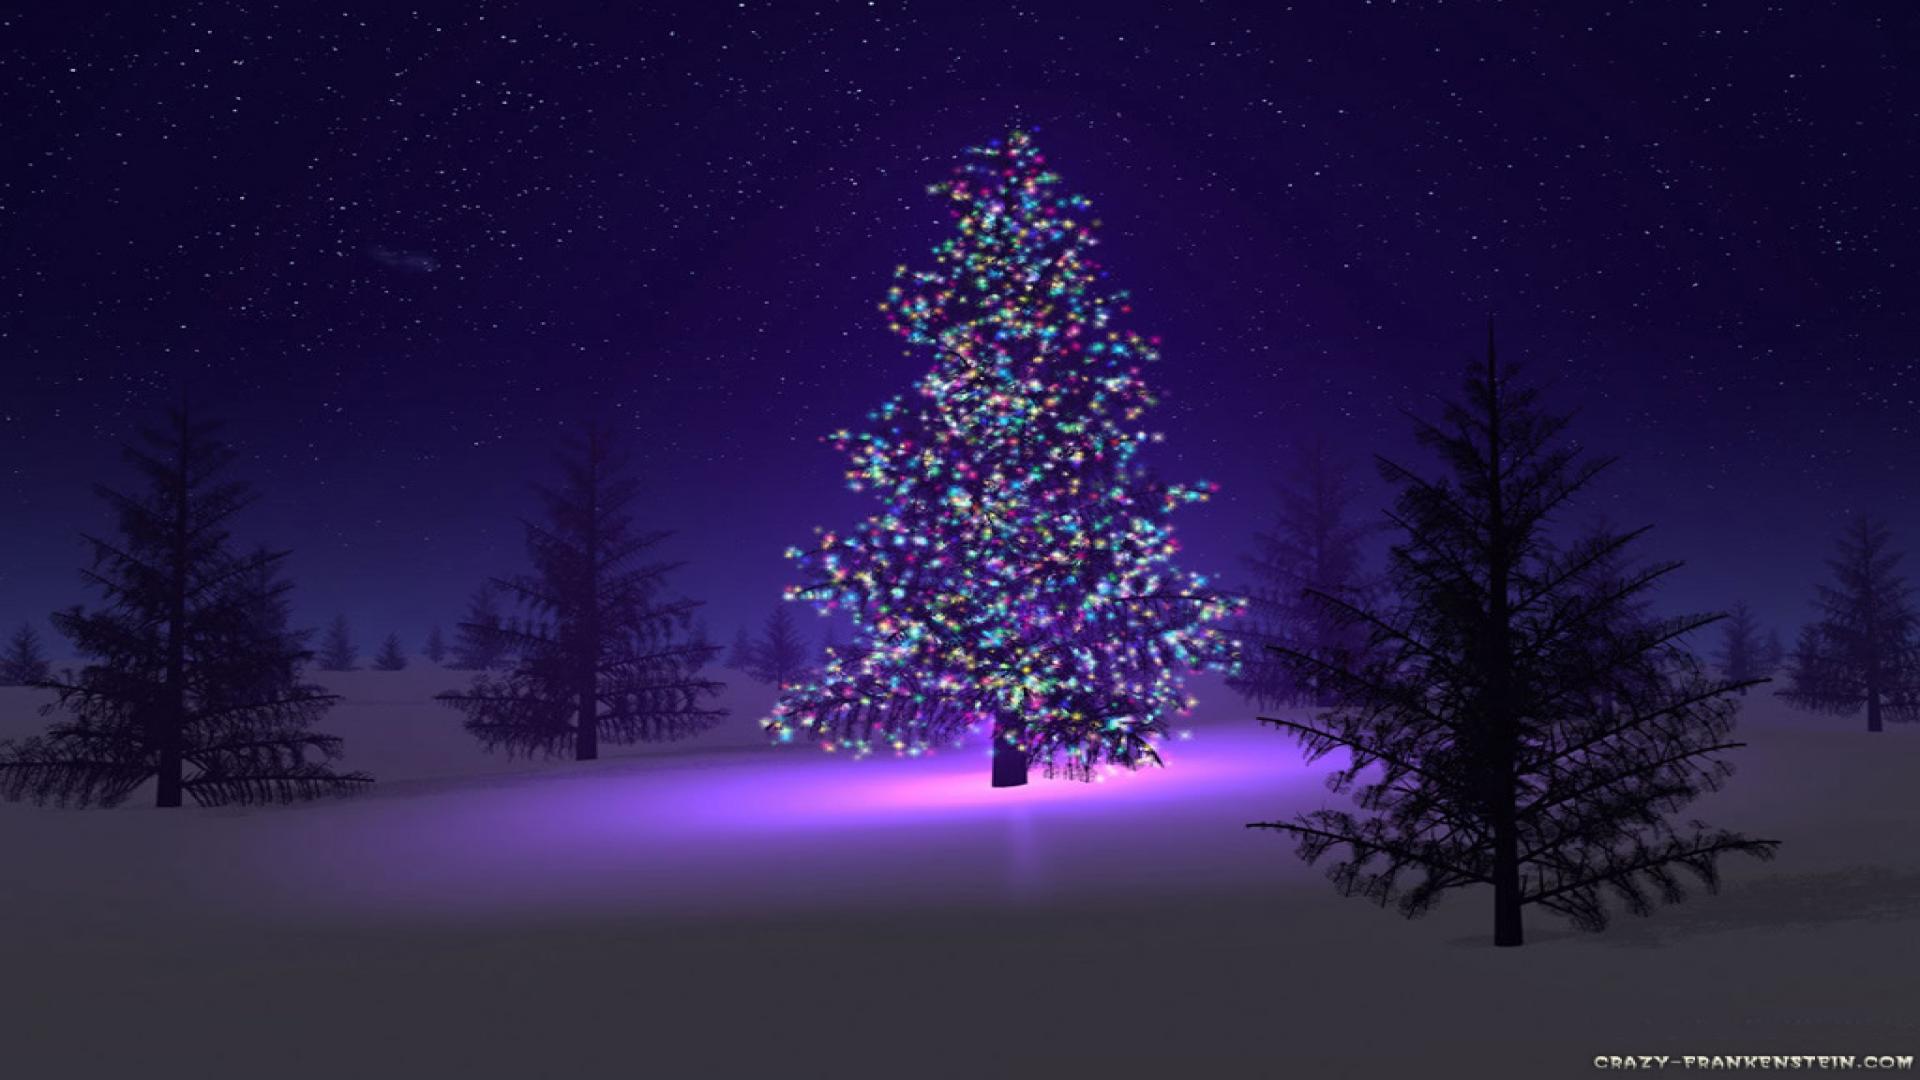 Giáng sinh đang đến, liệu bạn đã sẵn sàng để trang trí cho màn hình điện thoại của mình thêm phần ấm áp và rực rỡ? Với những hình nền Giáng sinh tuyệt đẹp và đầy màu sắc này, bạn sẽ có thể tạo ra không khí noel thật sự trong ngôi nhà ảo của mình.